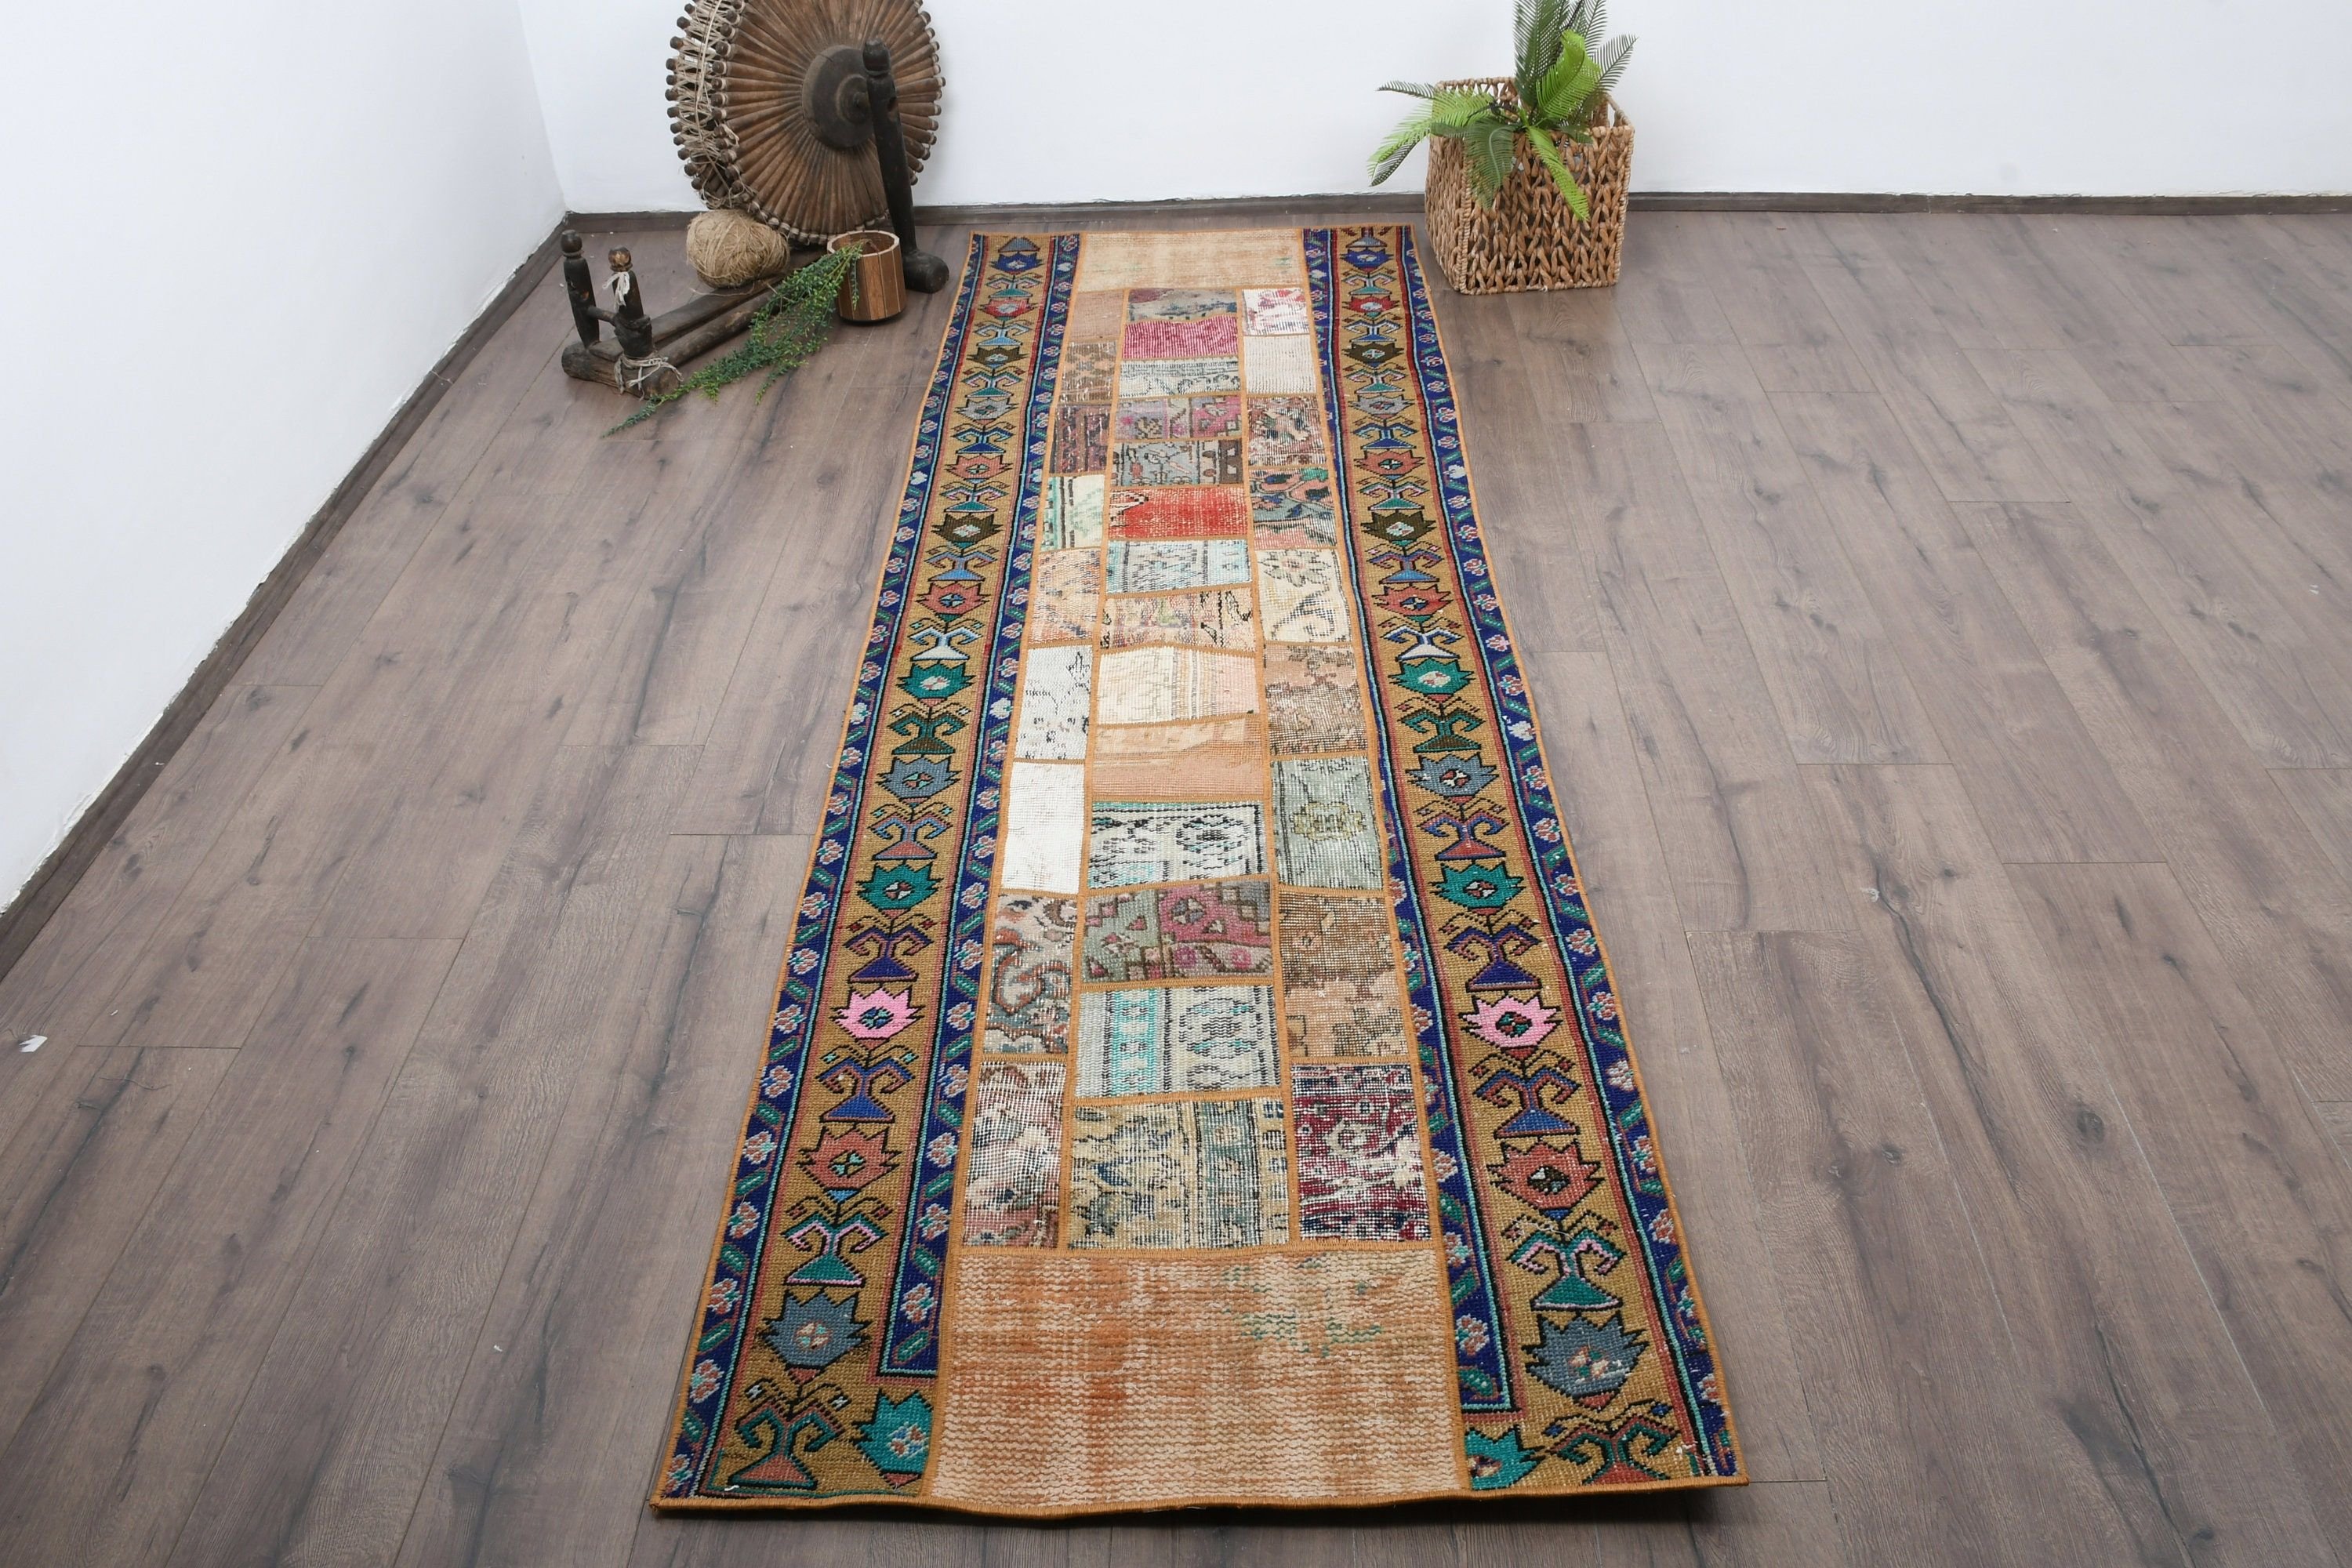 Turkish Rug, Aztec Rugs, Antique Rugs, Hallway Rugs, Oriental Rugs, Vintage Rug, 2.9x8.9 ft Runner Rug, Rainbow Floor Rug, Corridor Rug